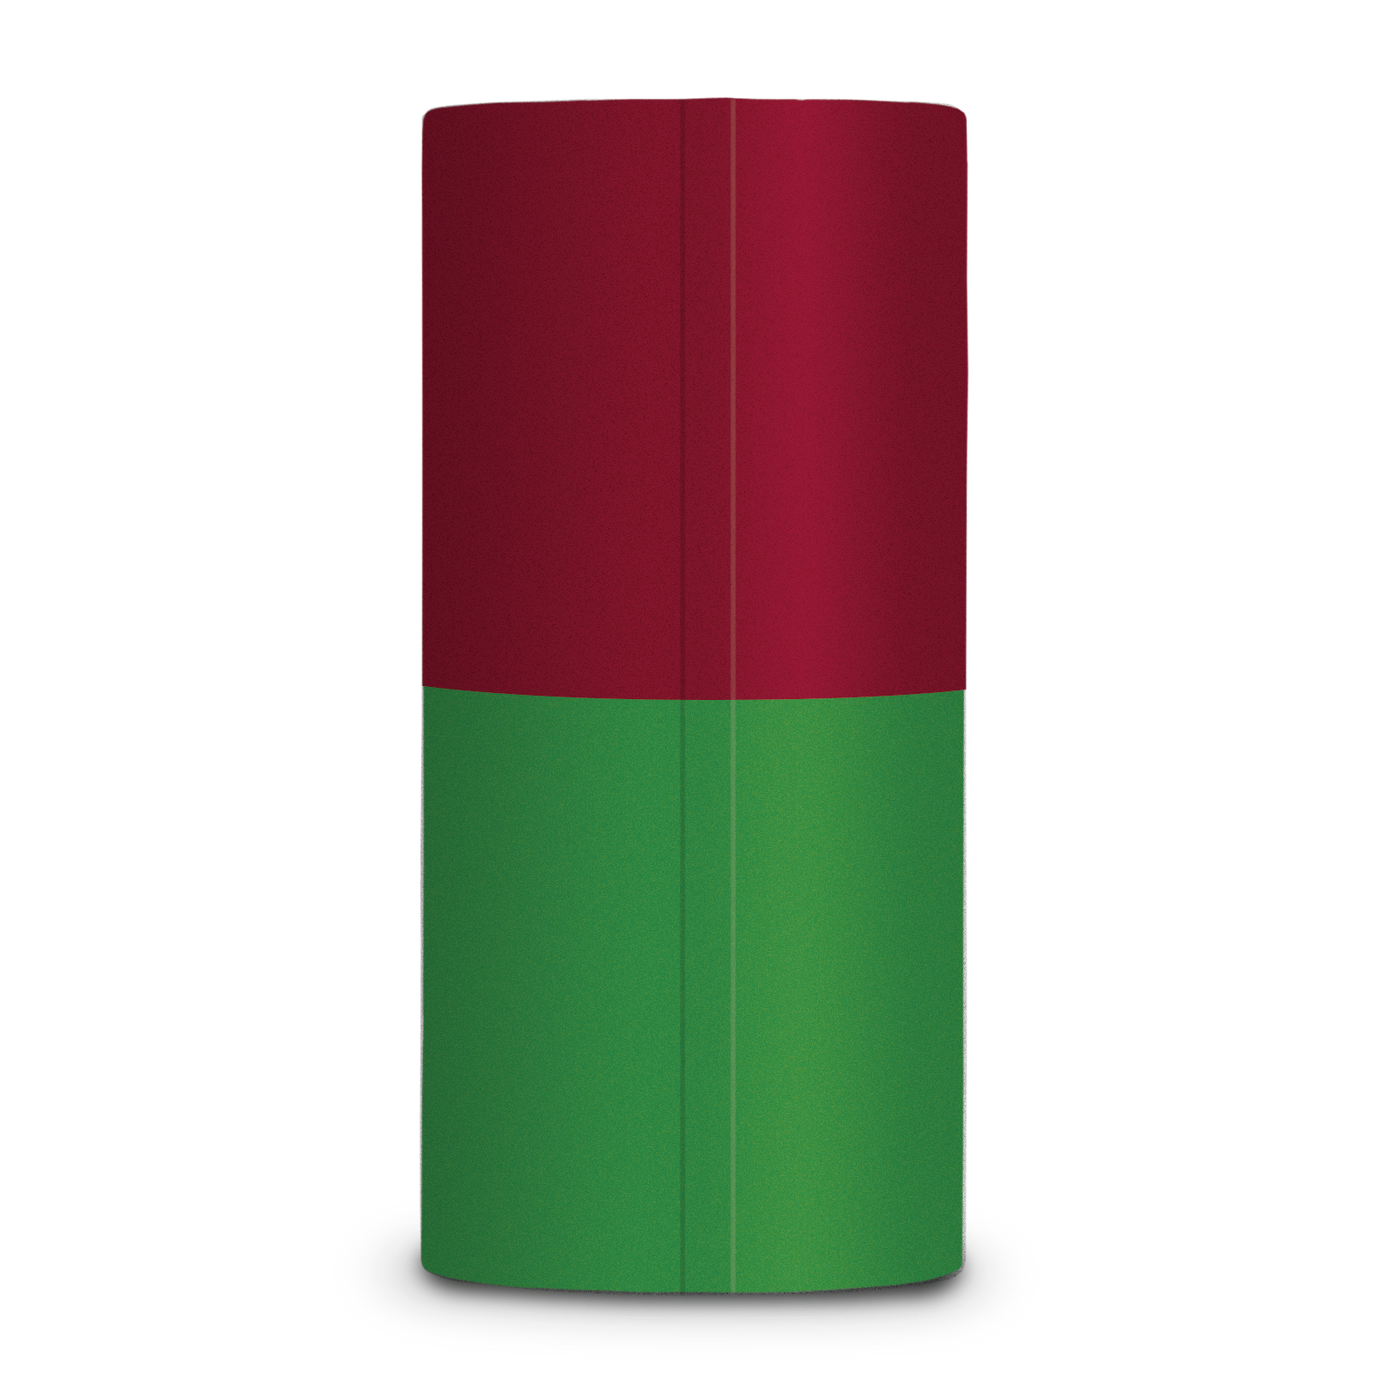 Red and Green Dual Color Thumb Slug